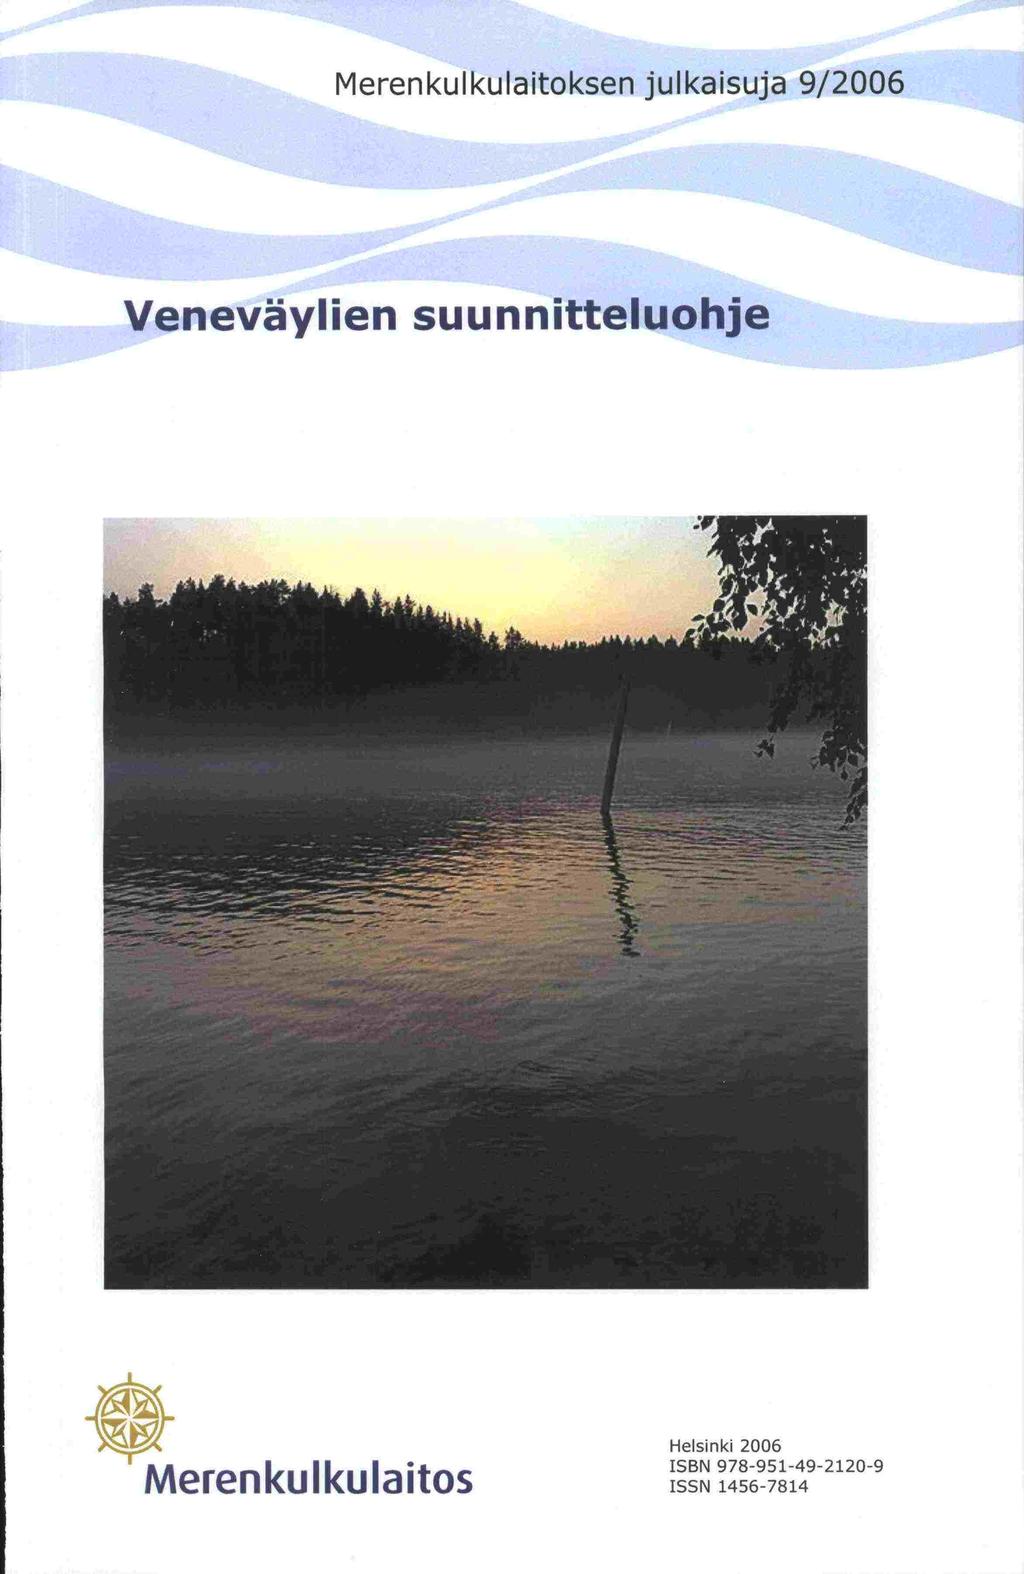 Merenkulkulaitoksen julkaisuja 92006 Veneväylien suunnitteluohje